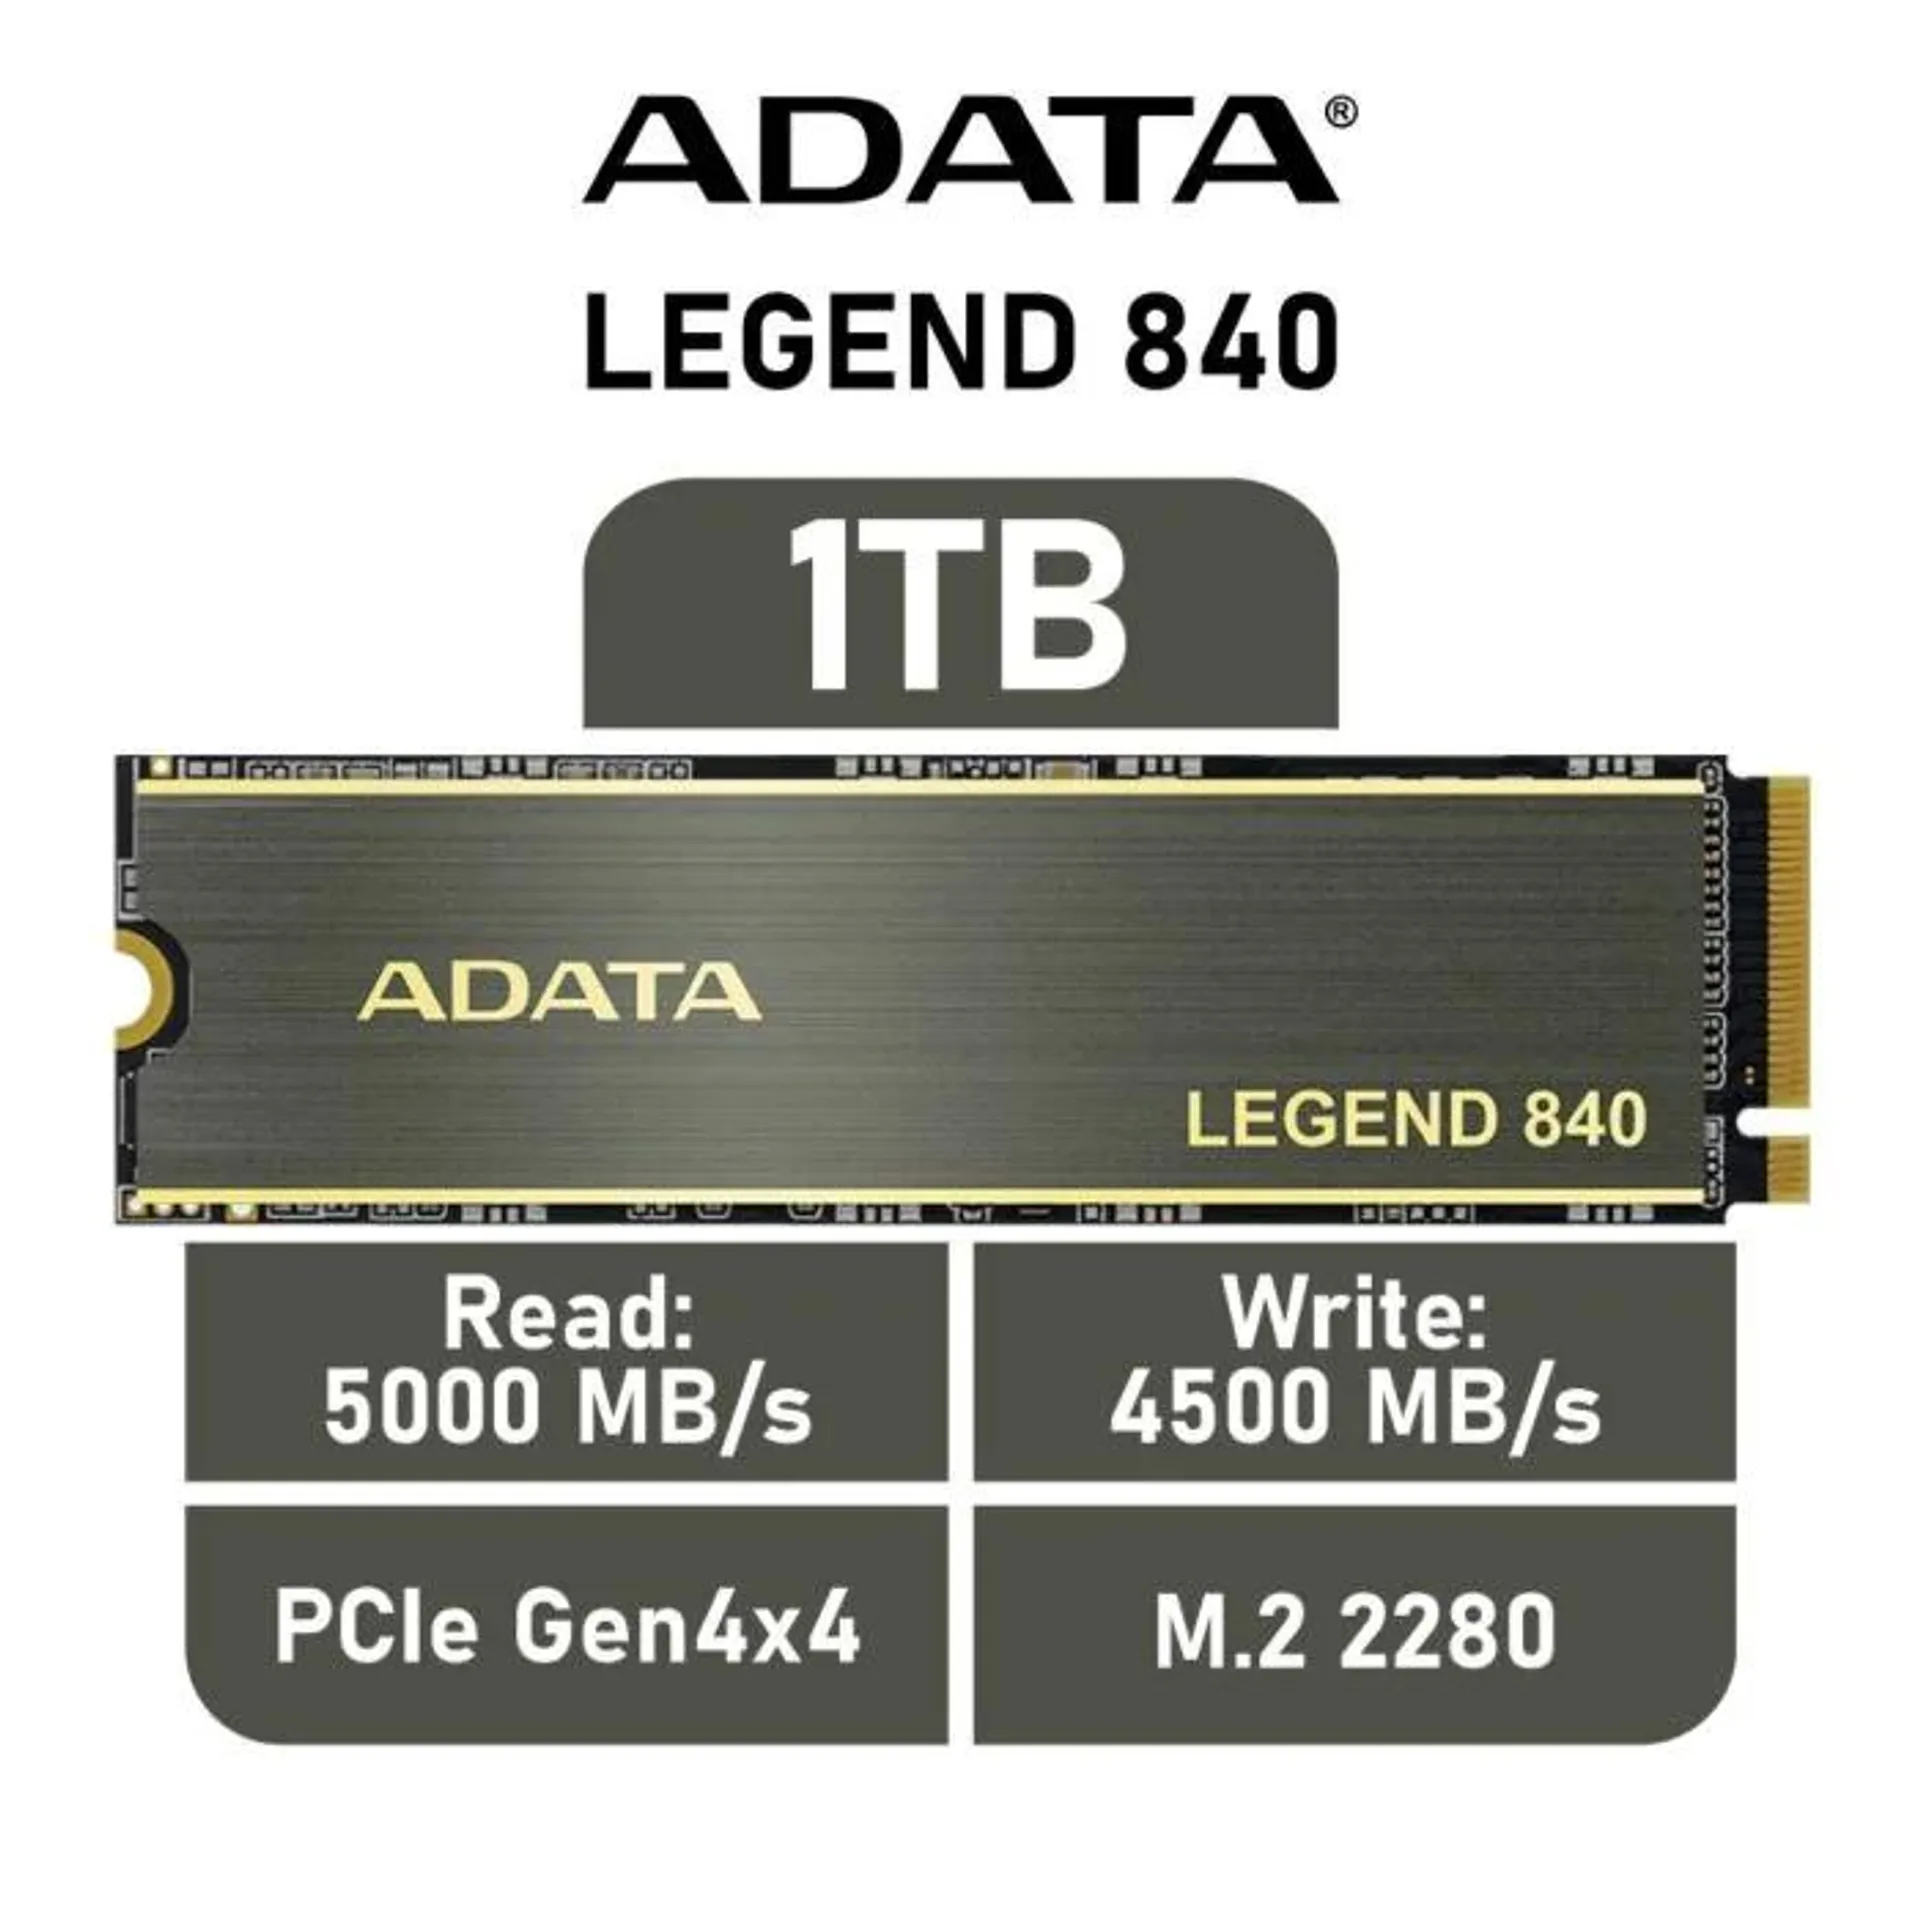 ADATA LEGEND 840 1TB PCIe Gen4x4 ALEG-840-1TCS M.2 2280 Solid State Drive